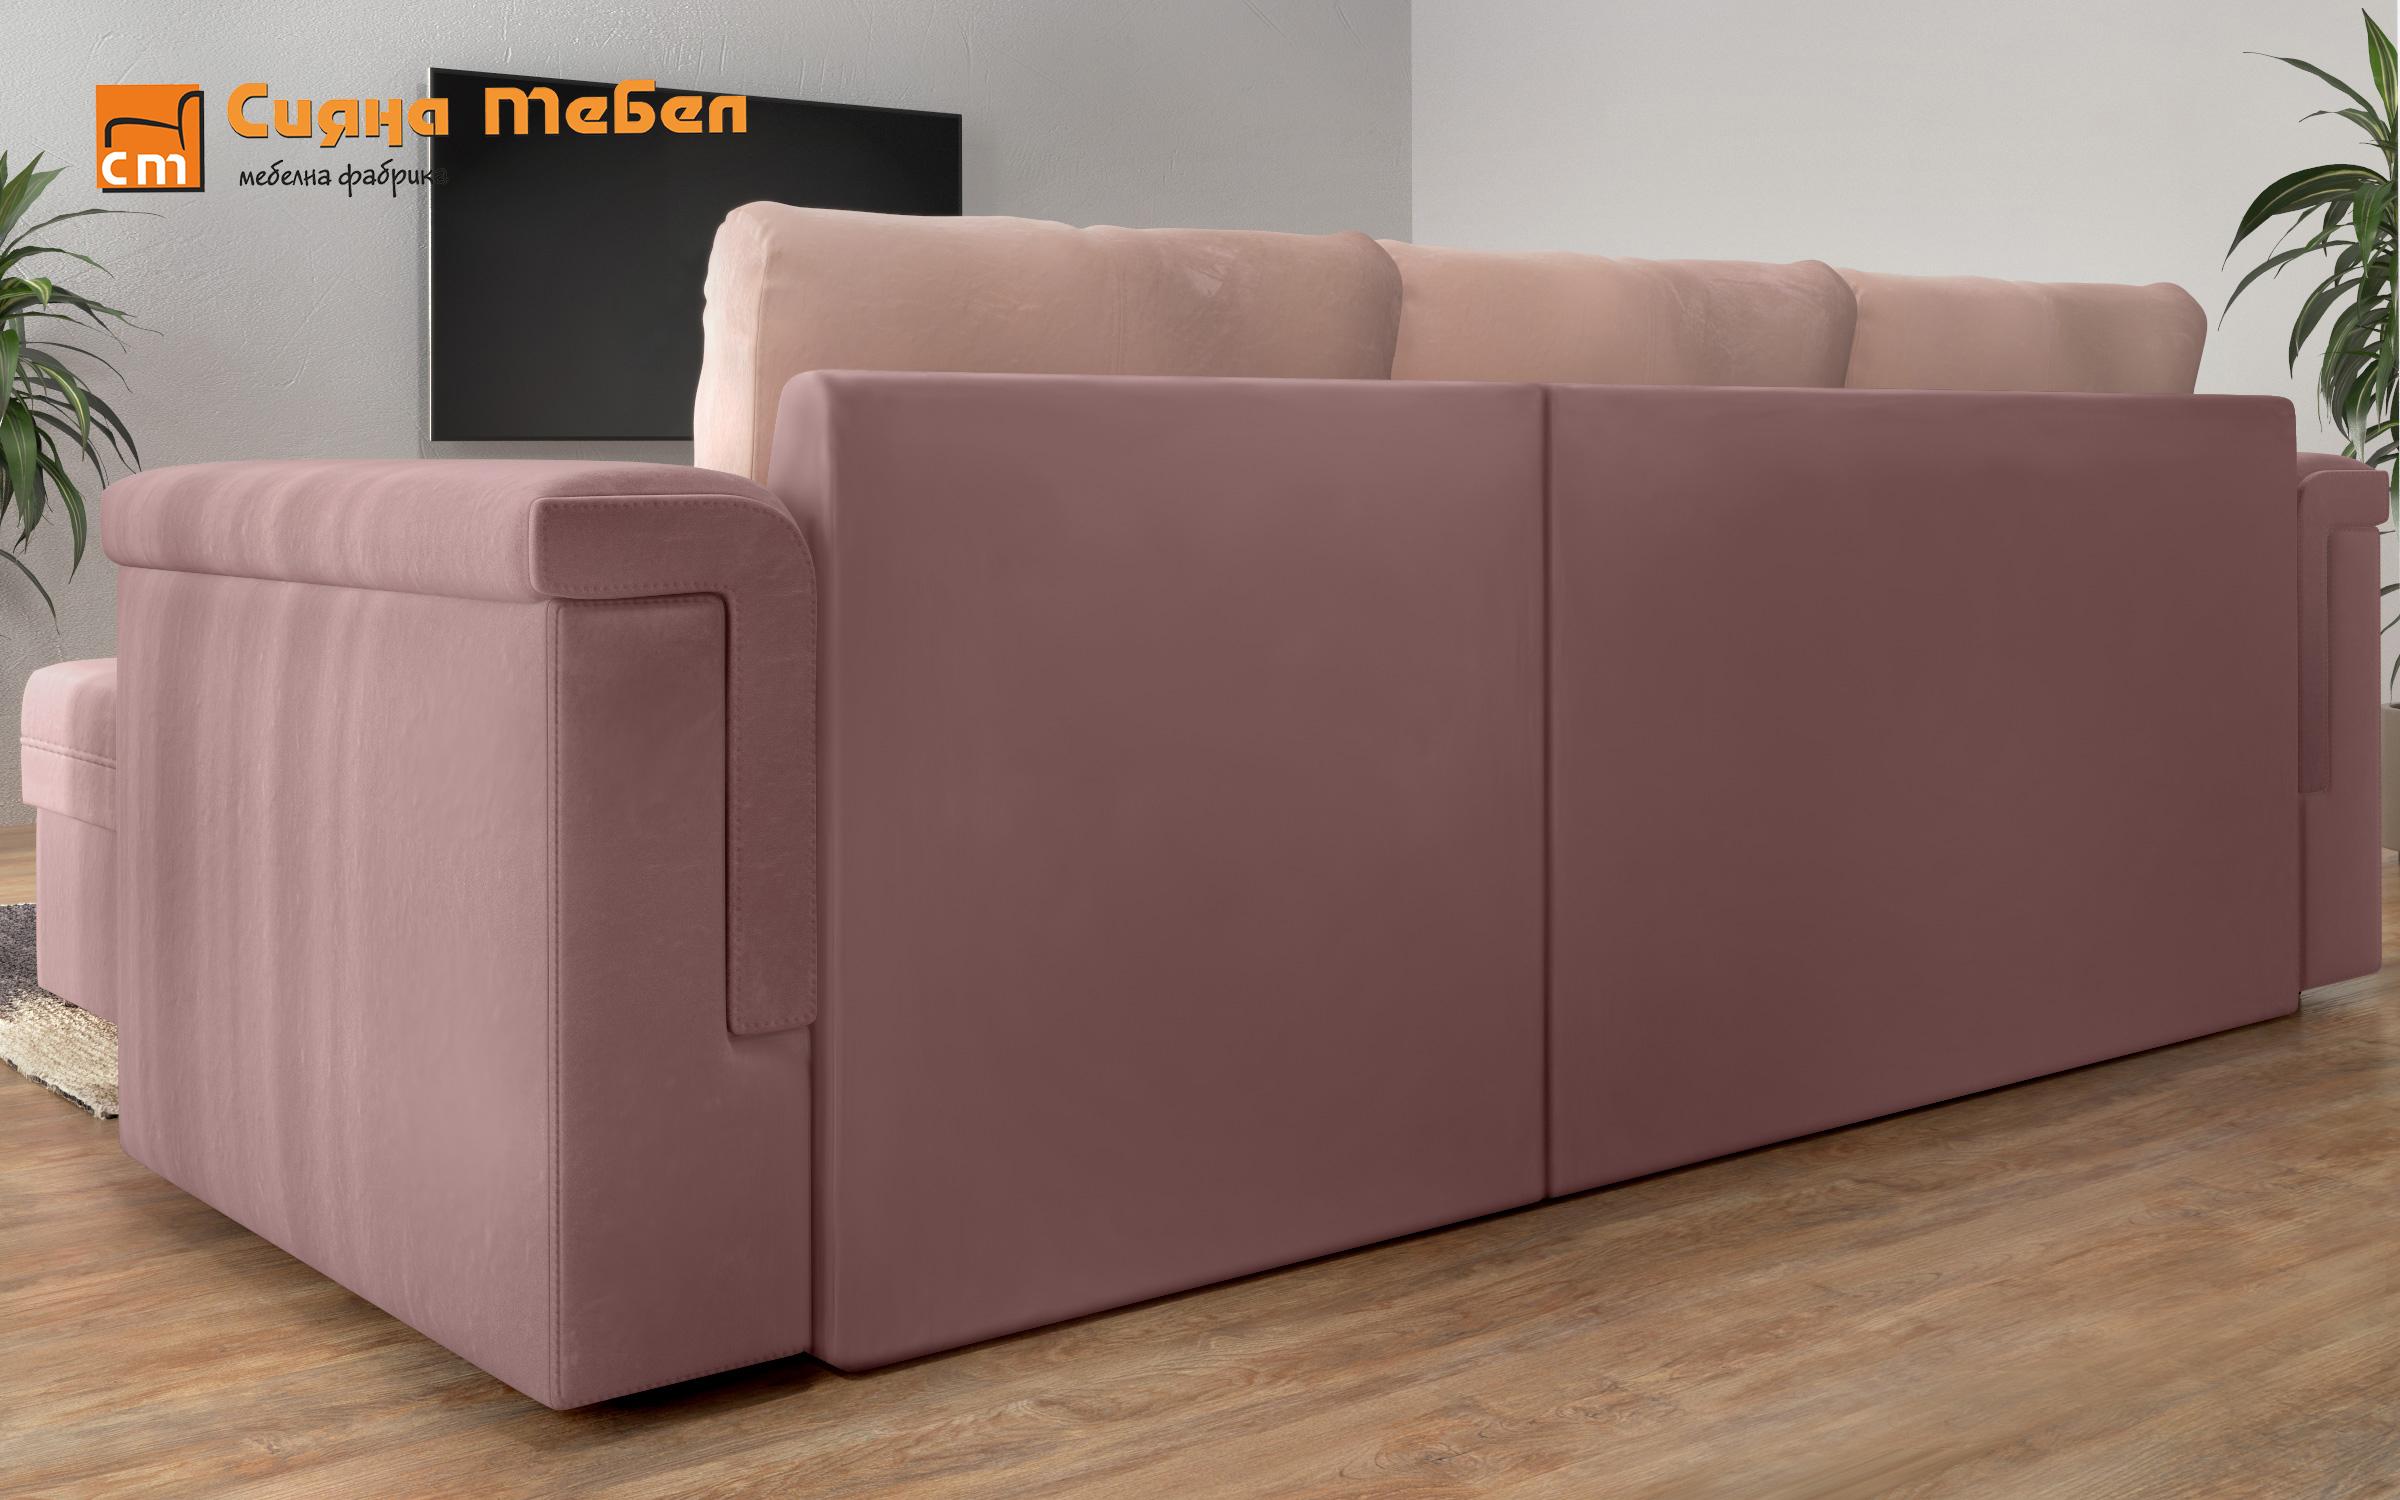 Γωνιακός καναπές Heaven, ροζ + ανοιχτό ροζ  9